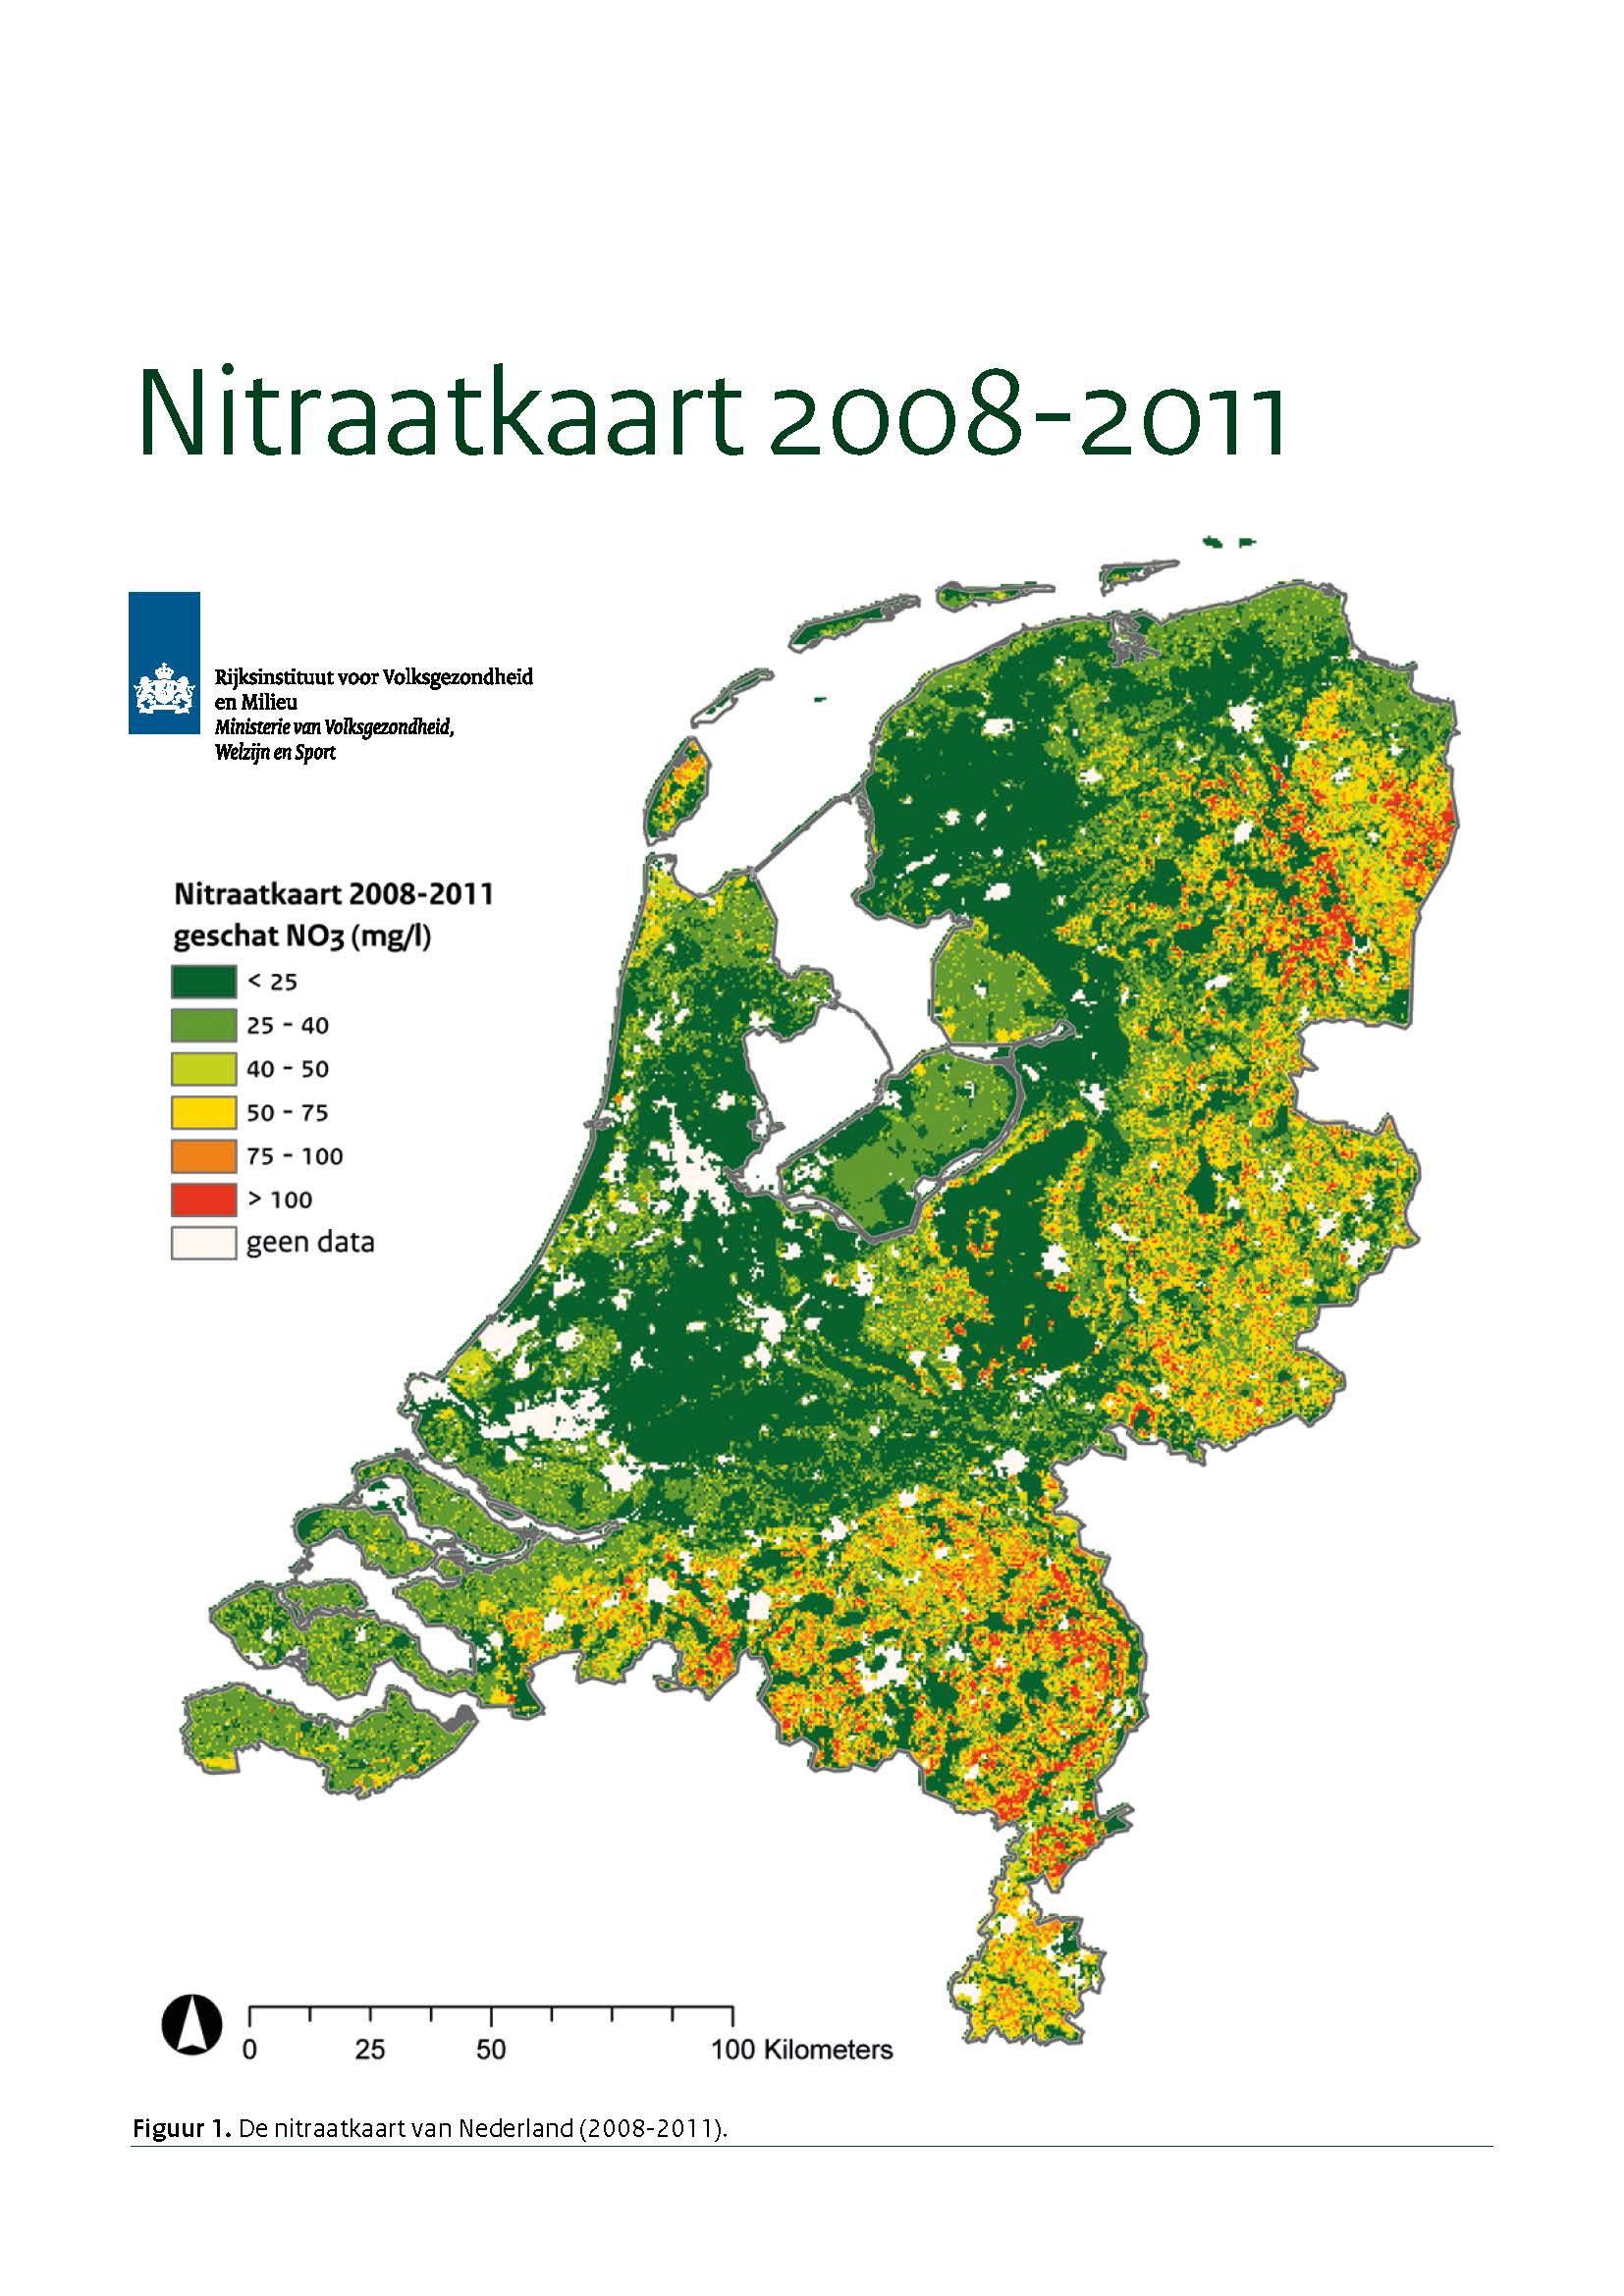 Nitraatkaart van Nederland 2008-2011